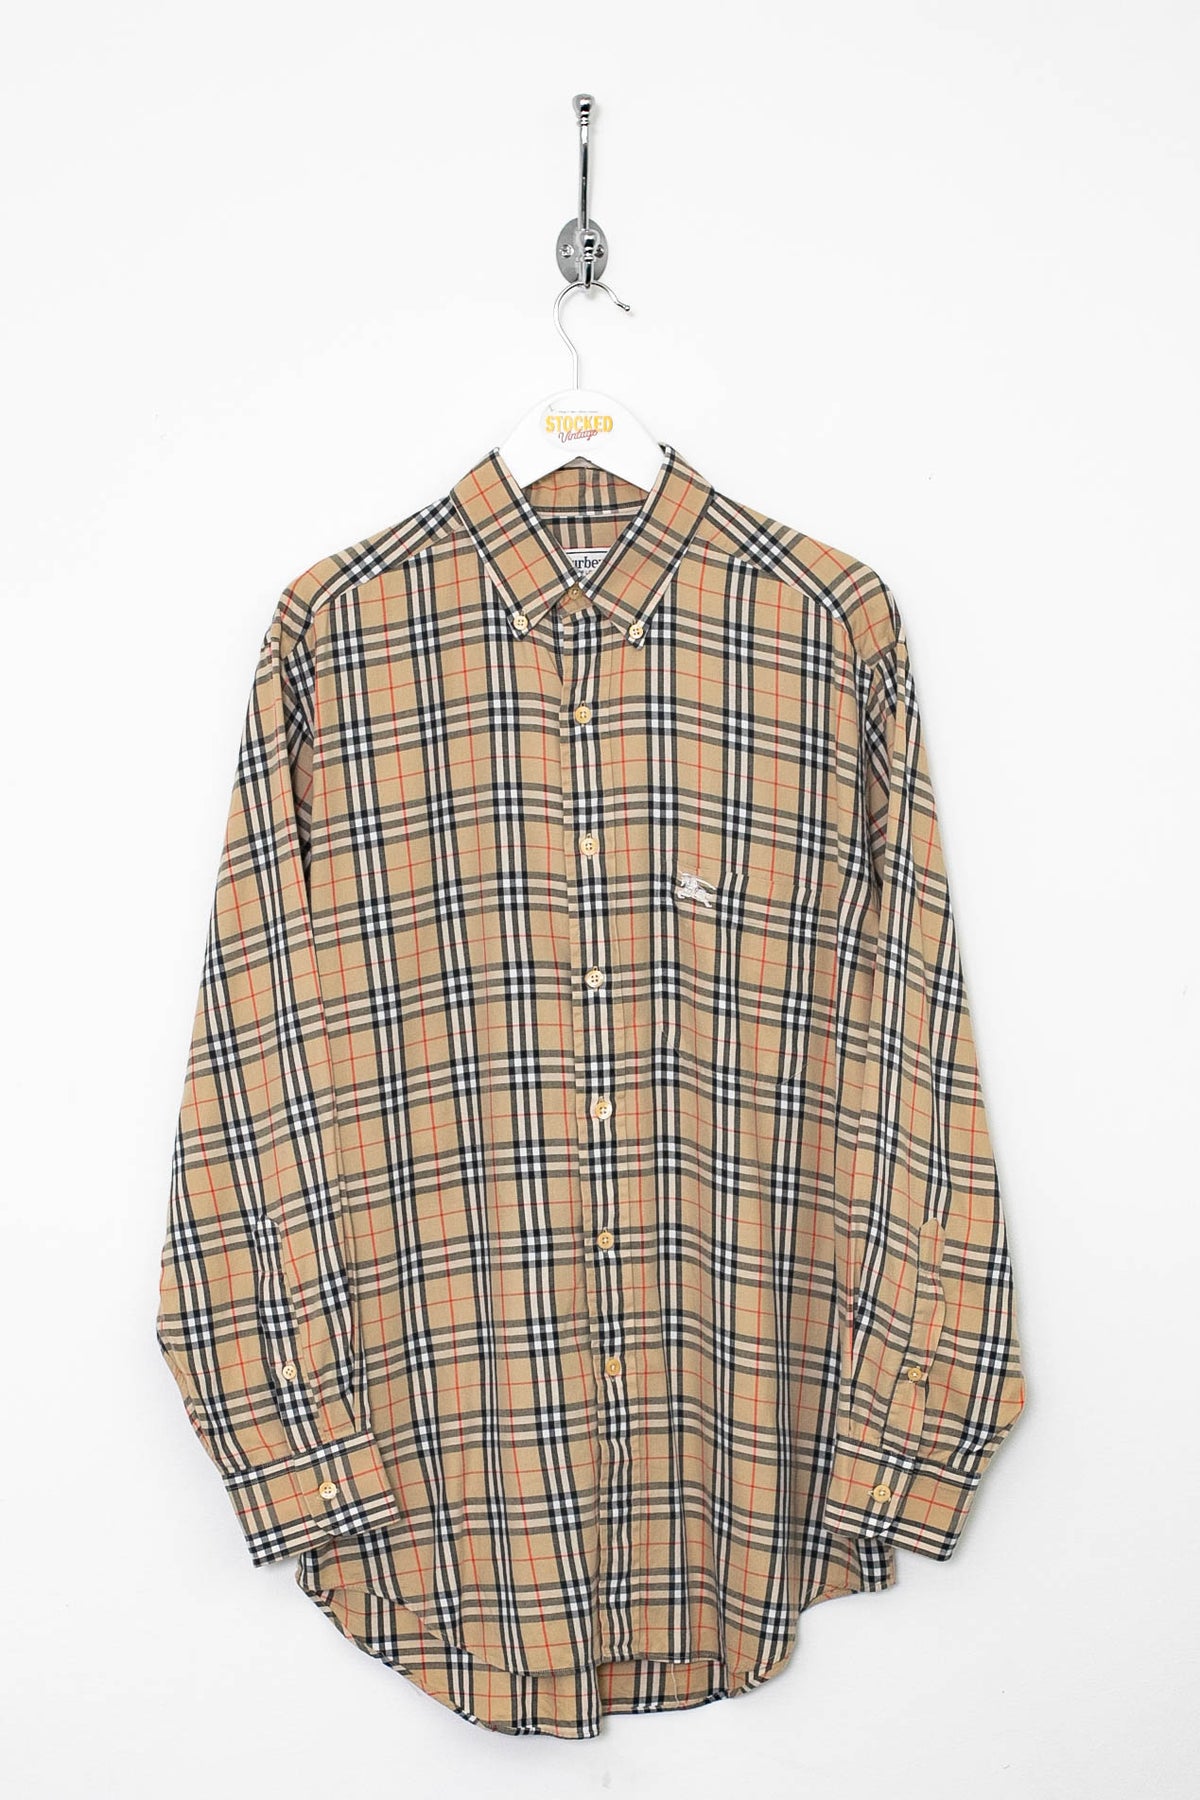 90s Burberry Nova Check Shirt (M)